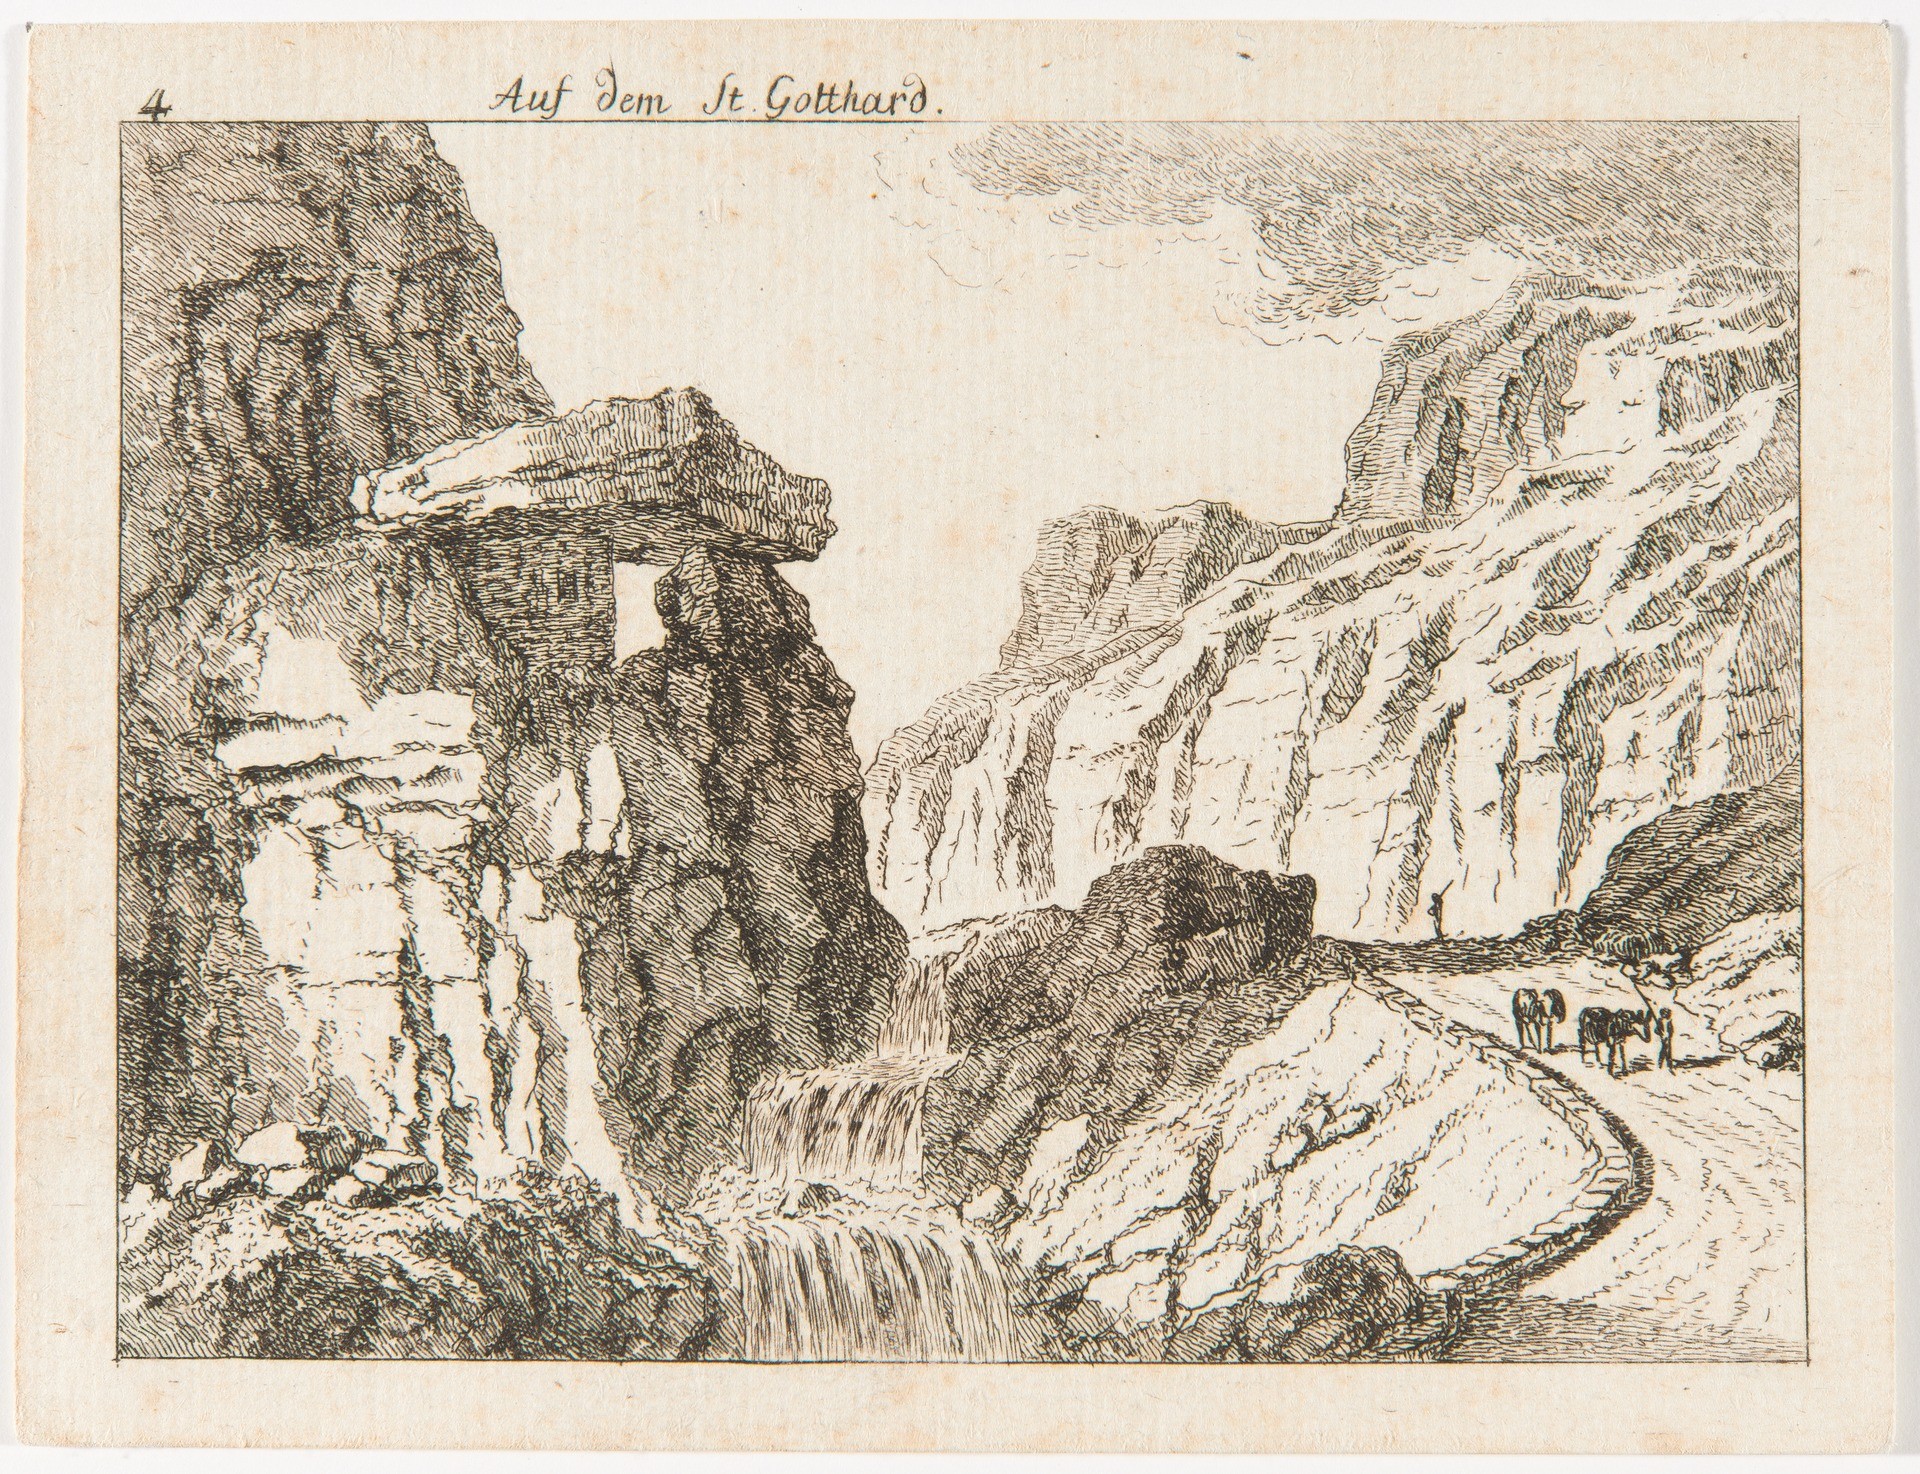 Gotthard, Abstieg auf der Tessiner Seite, links im Bild der Ticino, Salomon Gessner, 1781